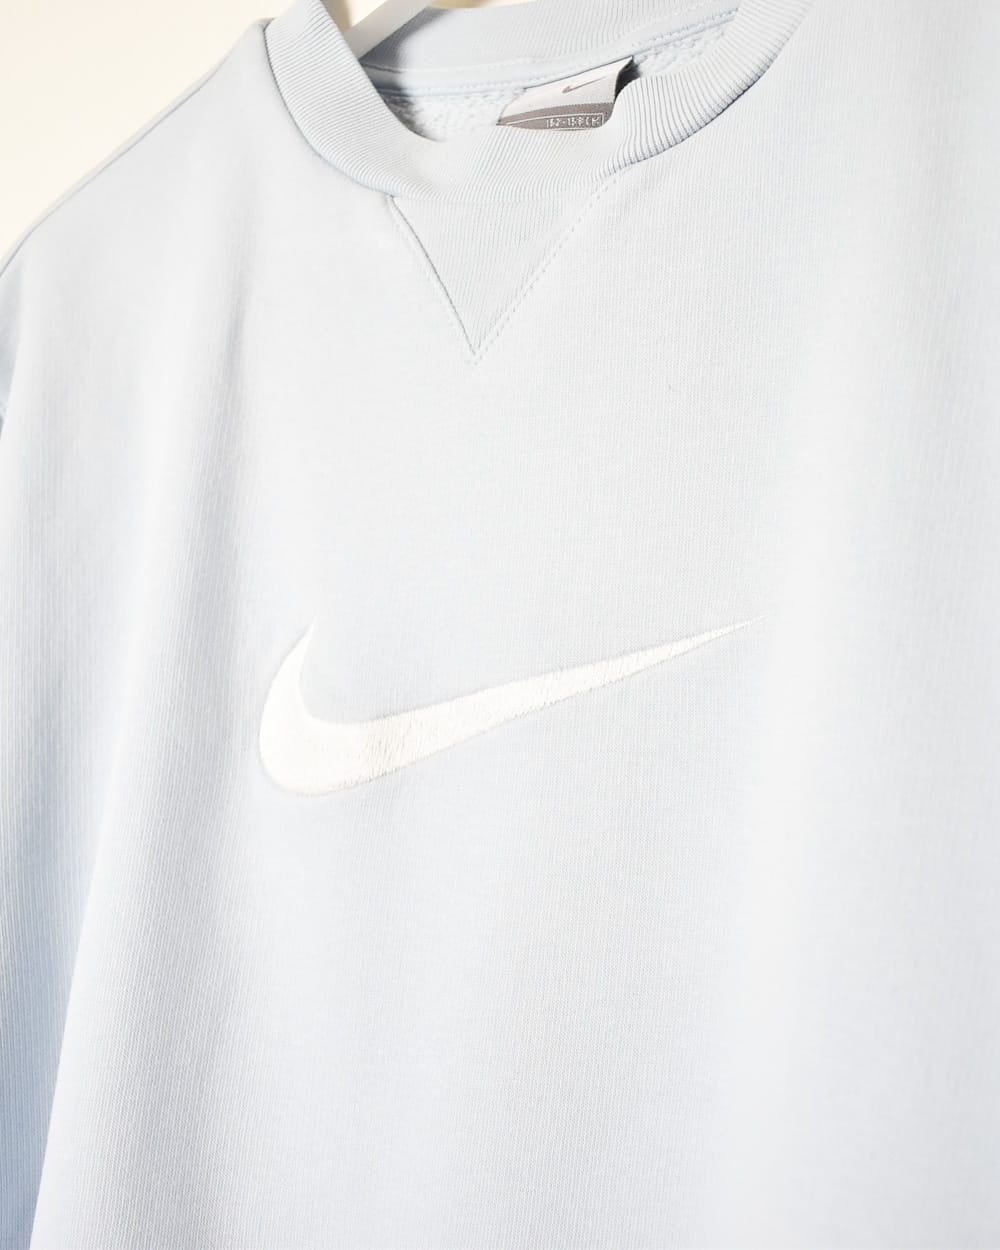 Baby Nike Sweatshirt - X-Small